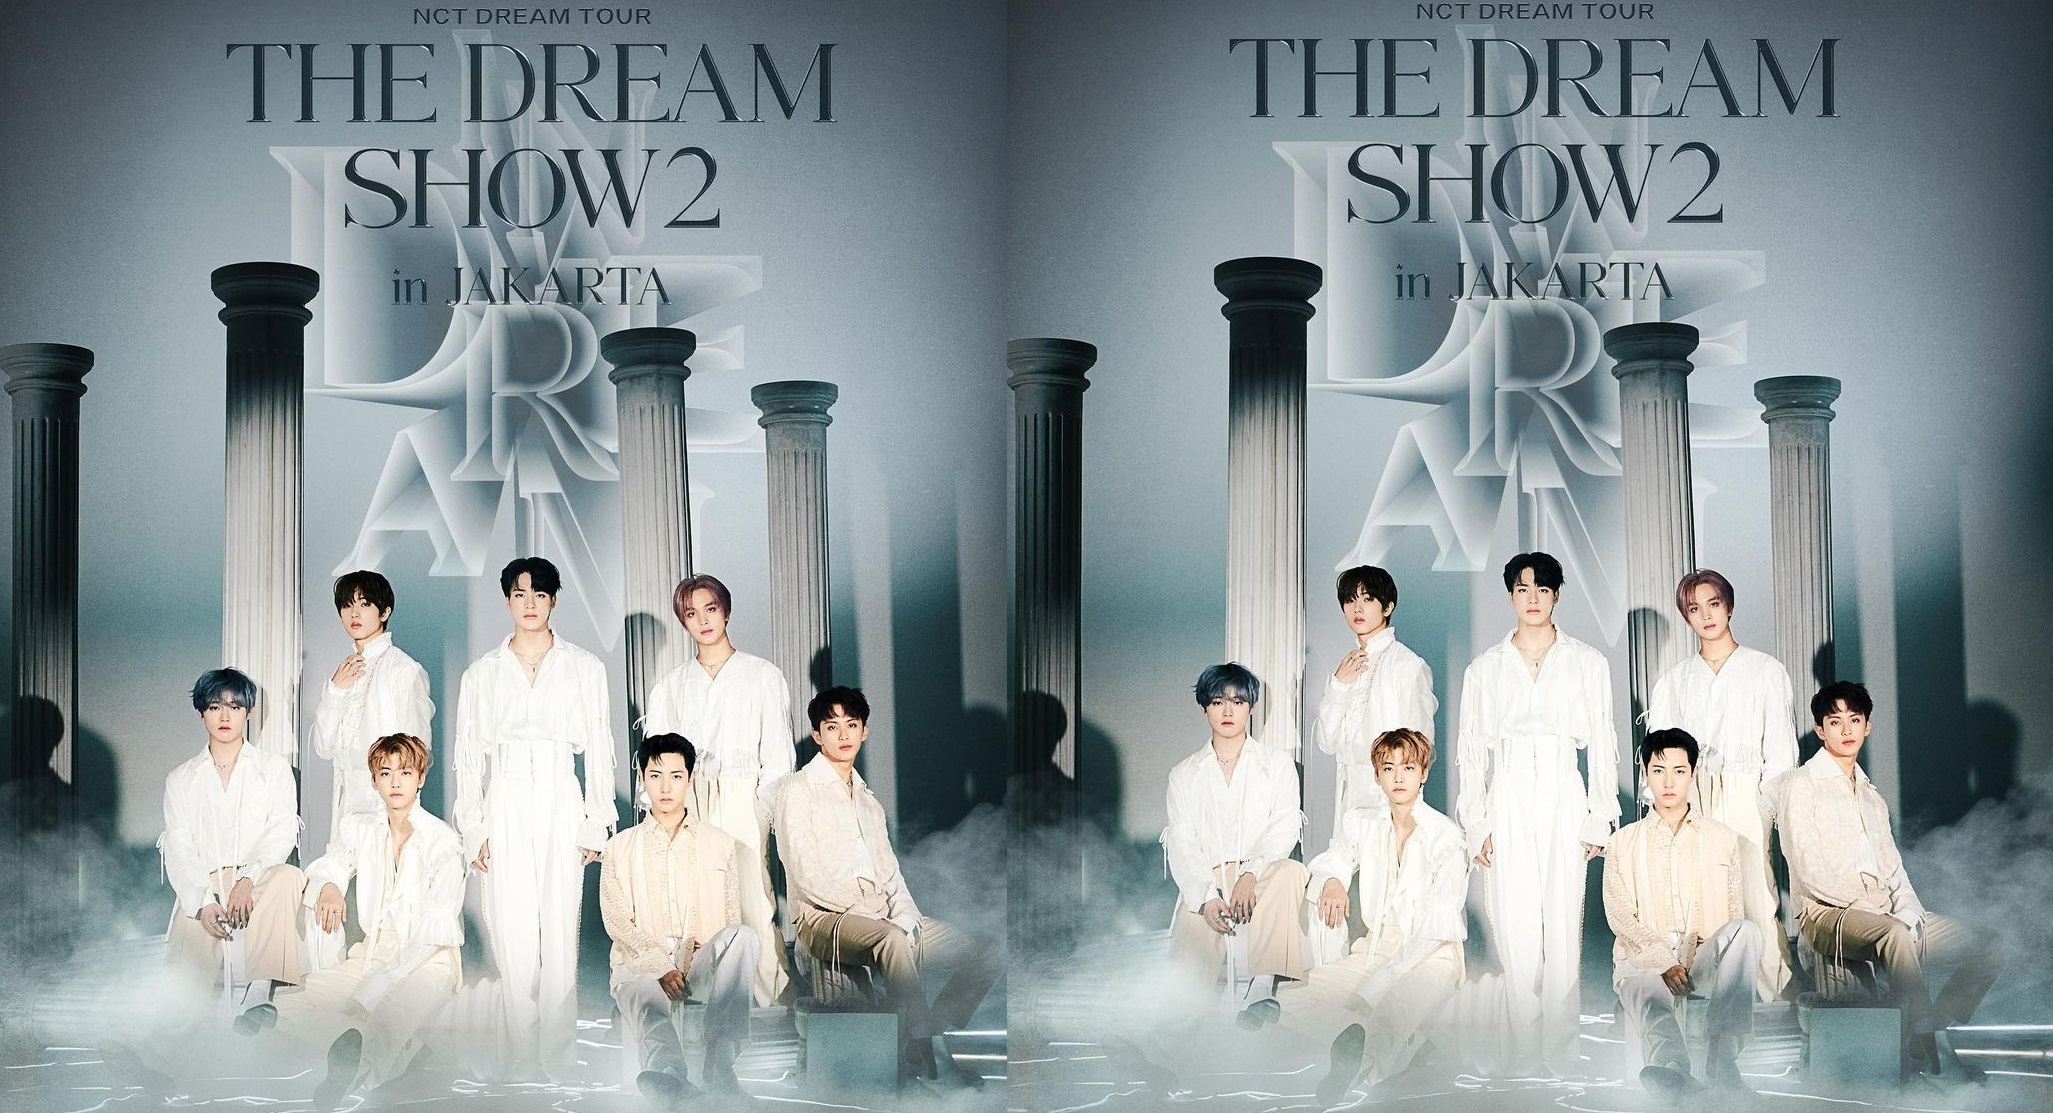 Daftar Harga dan Cara Beli Tiket Konser NCT Dream “The Dream Show 2 in Jakarta”, Digelar Selama 3 Hari Berturut-turut